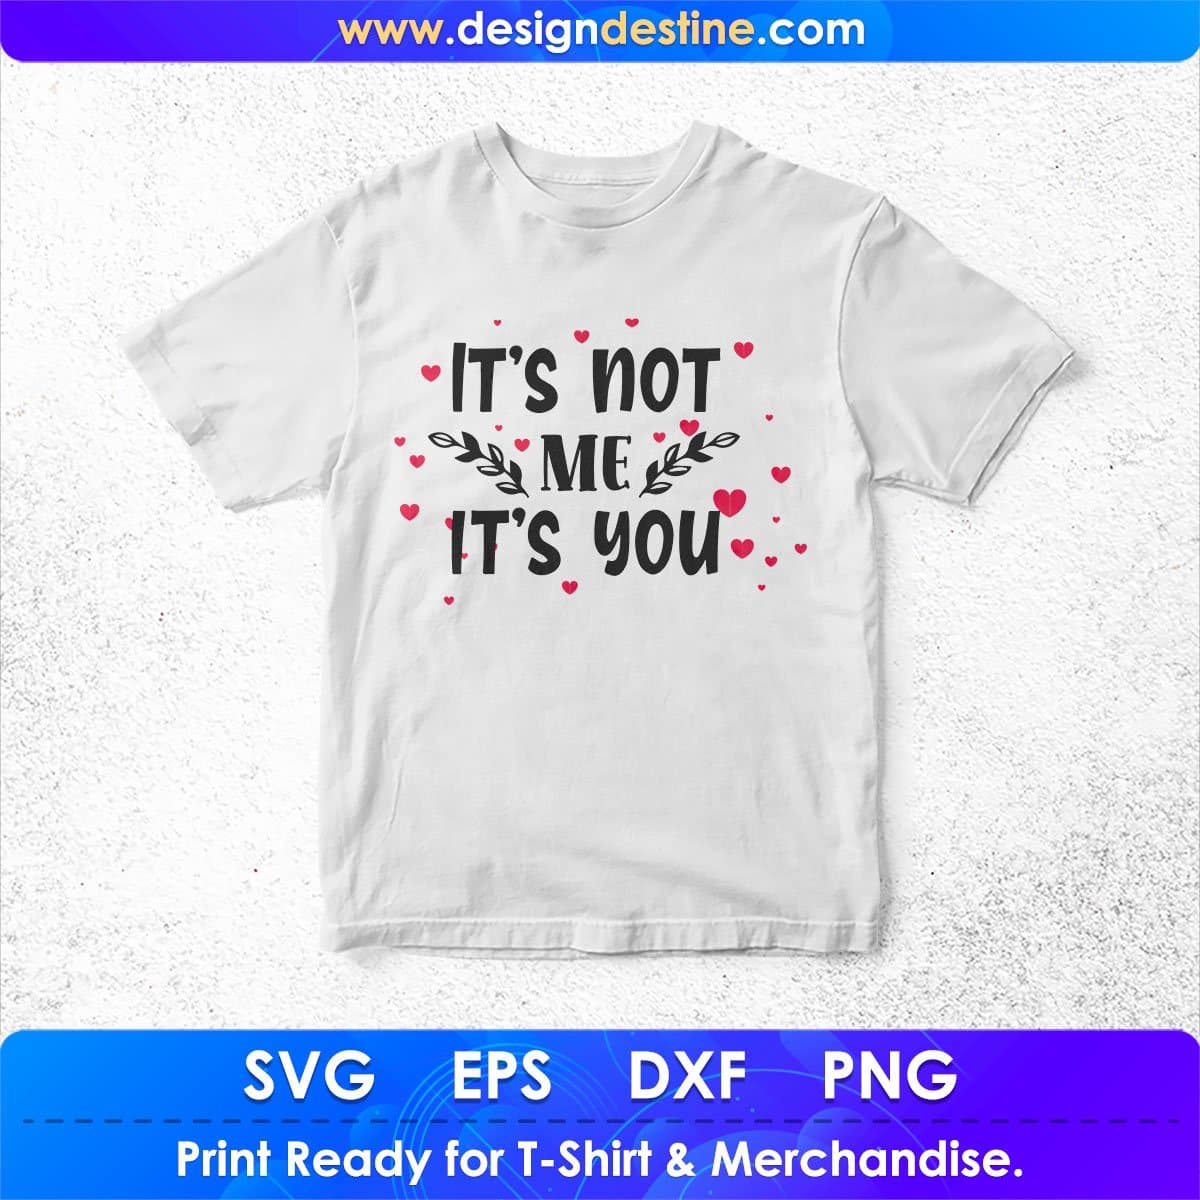 It’s Not Me It’s You T shirt Design In Svg Png Cutting Printable Files